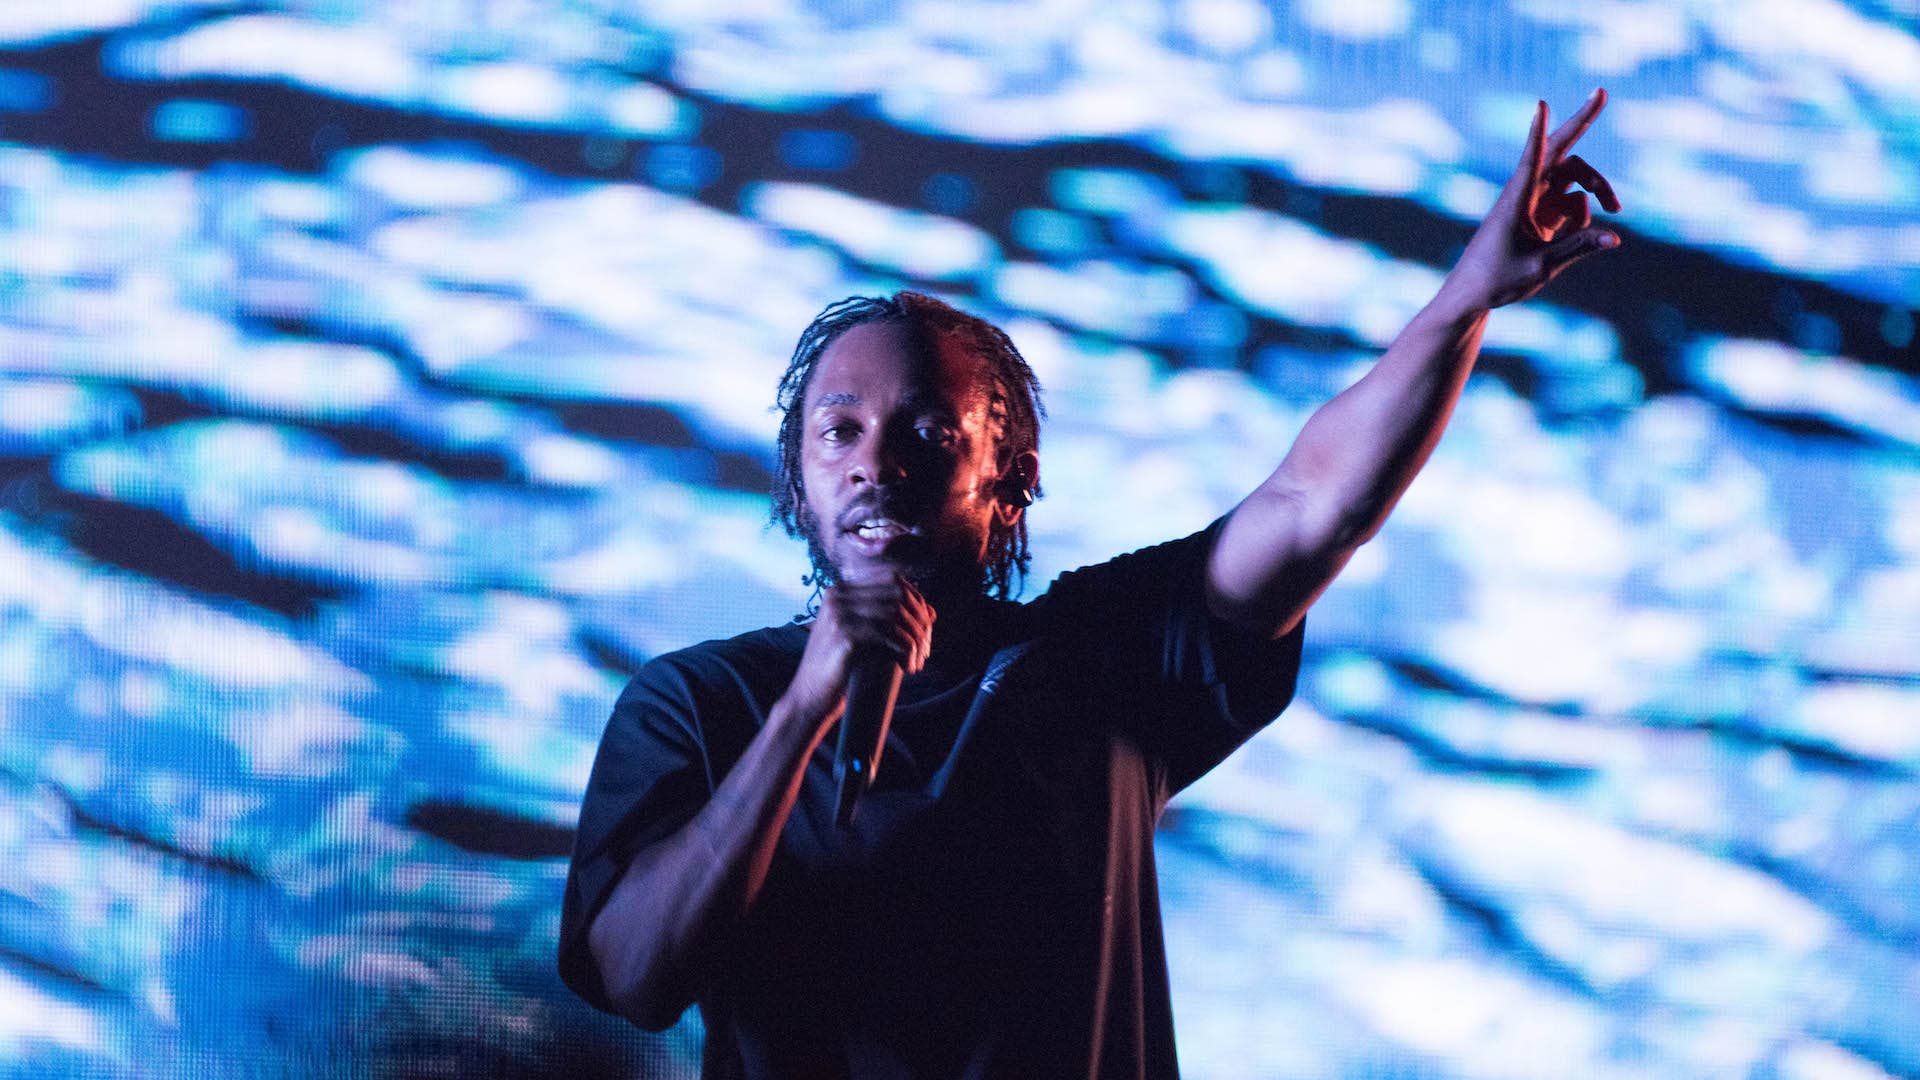 Kendrick Lamar is going on tour, announces dates.